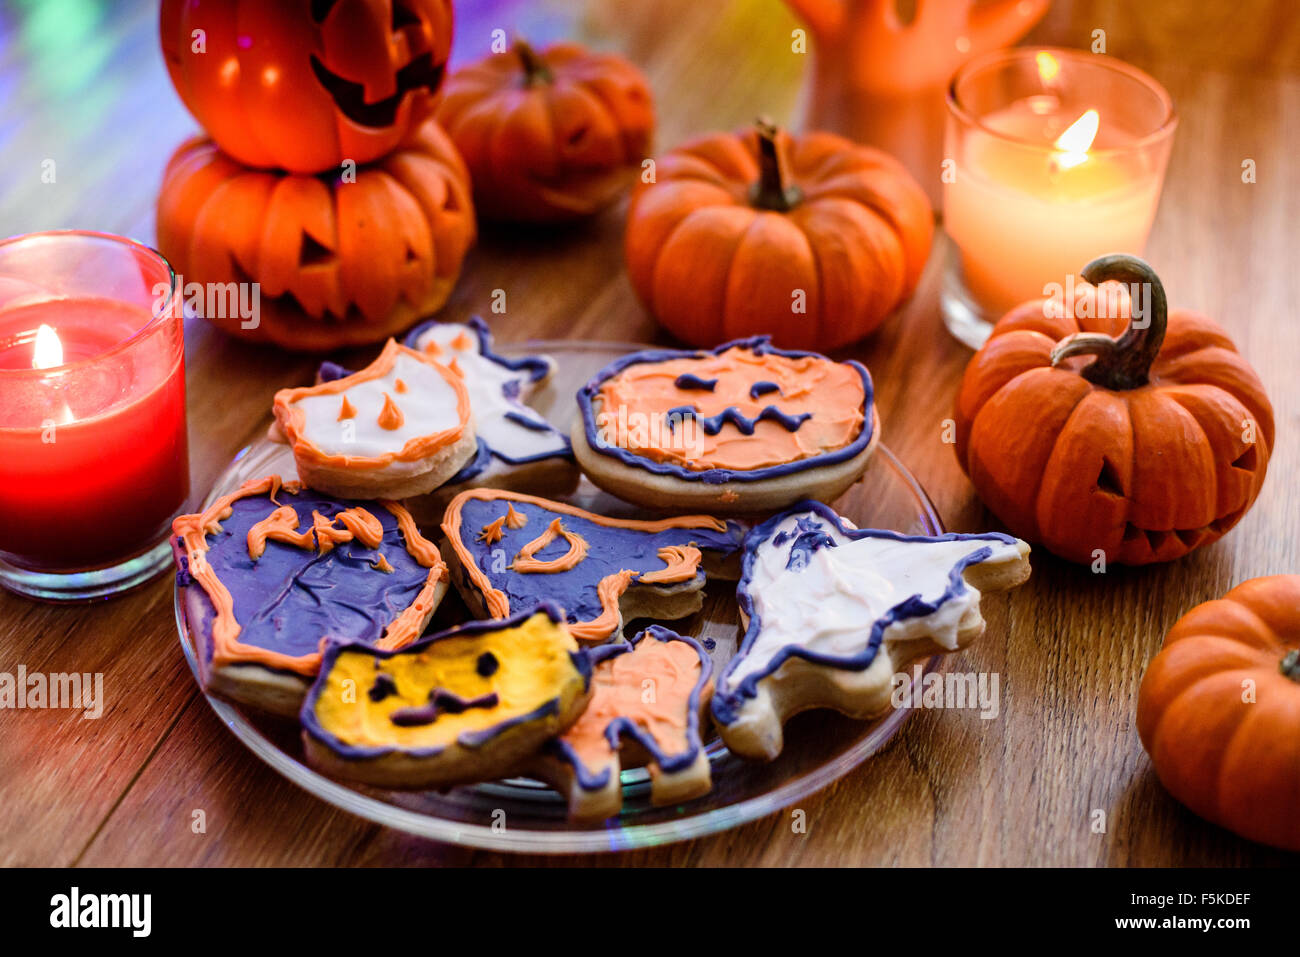 bake, baking, cookies, cookies cutters, festival, food, Halloween, Halloween cookies, Halloween festival, handmade cookies,pumpk Stock Photo